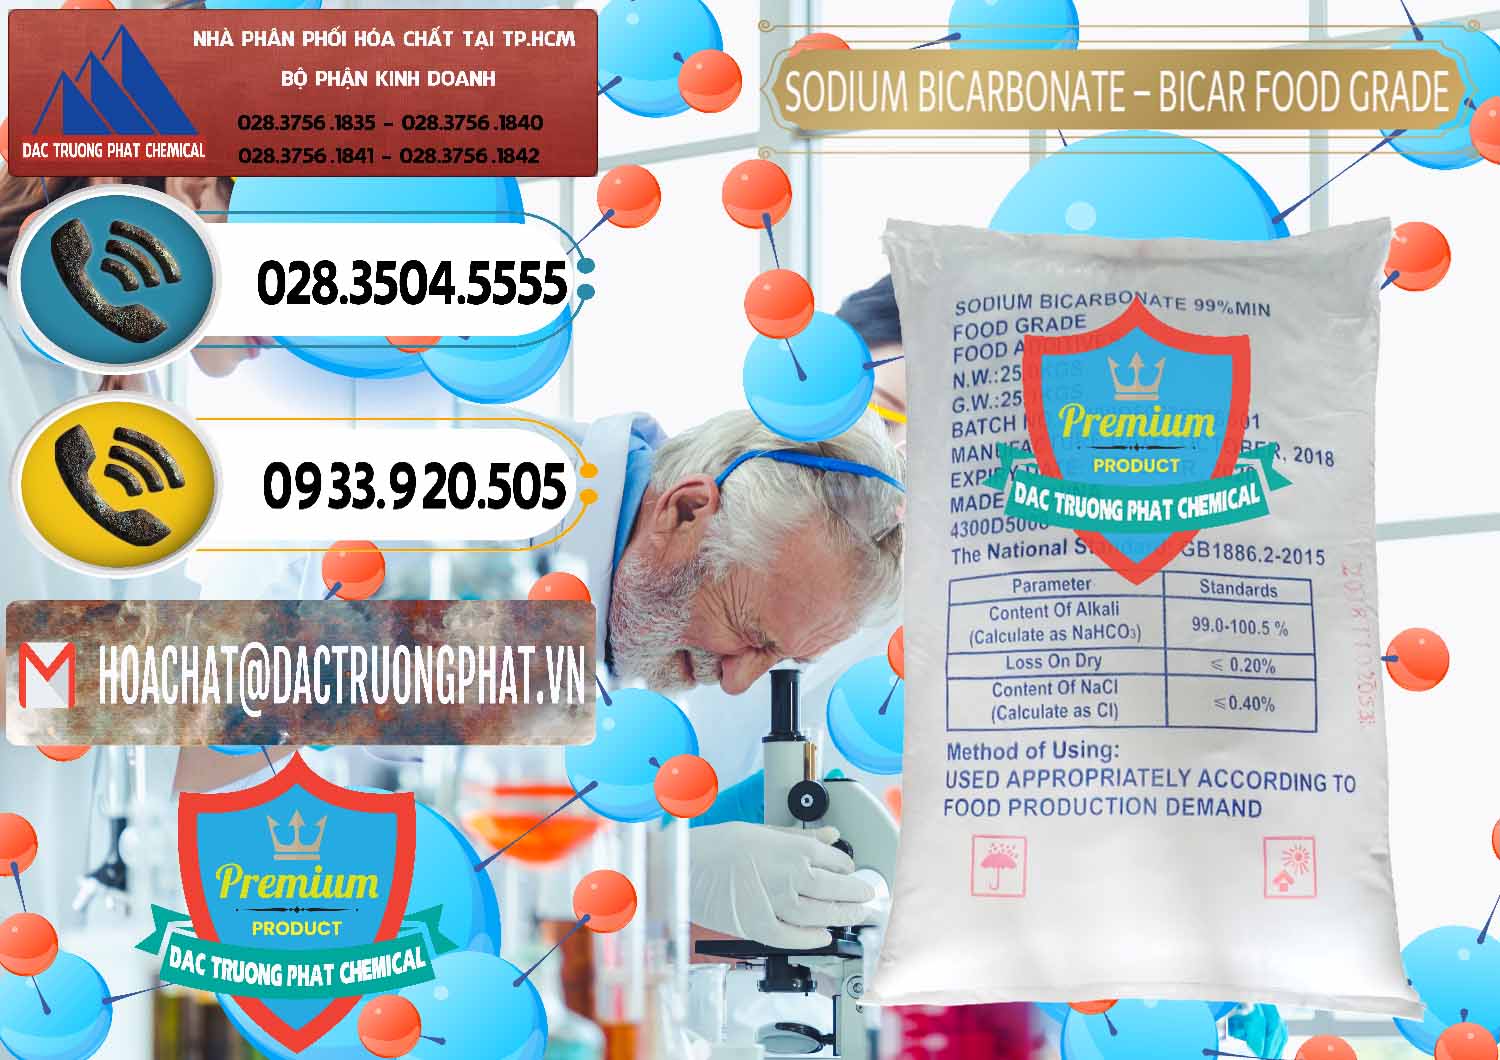 Công ty chuyên kinh doanh _ bán Sodium Bicarbonate – Bicar NaHCO3 Food Grade Trung Quốc China - 0138 - Phân phối - bán hóa chất tại TP.HCM - hoachatdetnhuom.vn